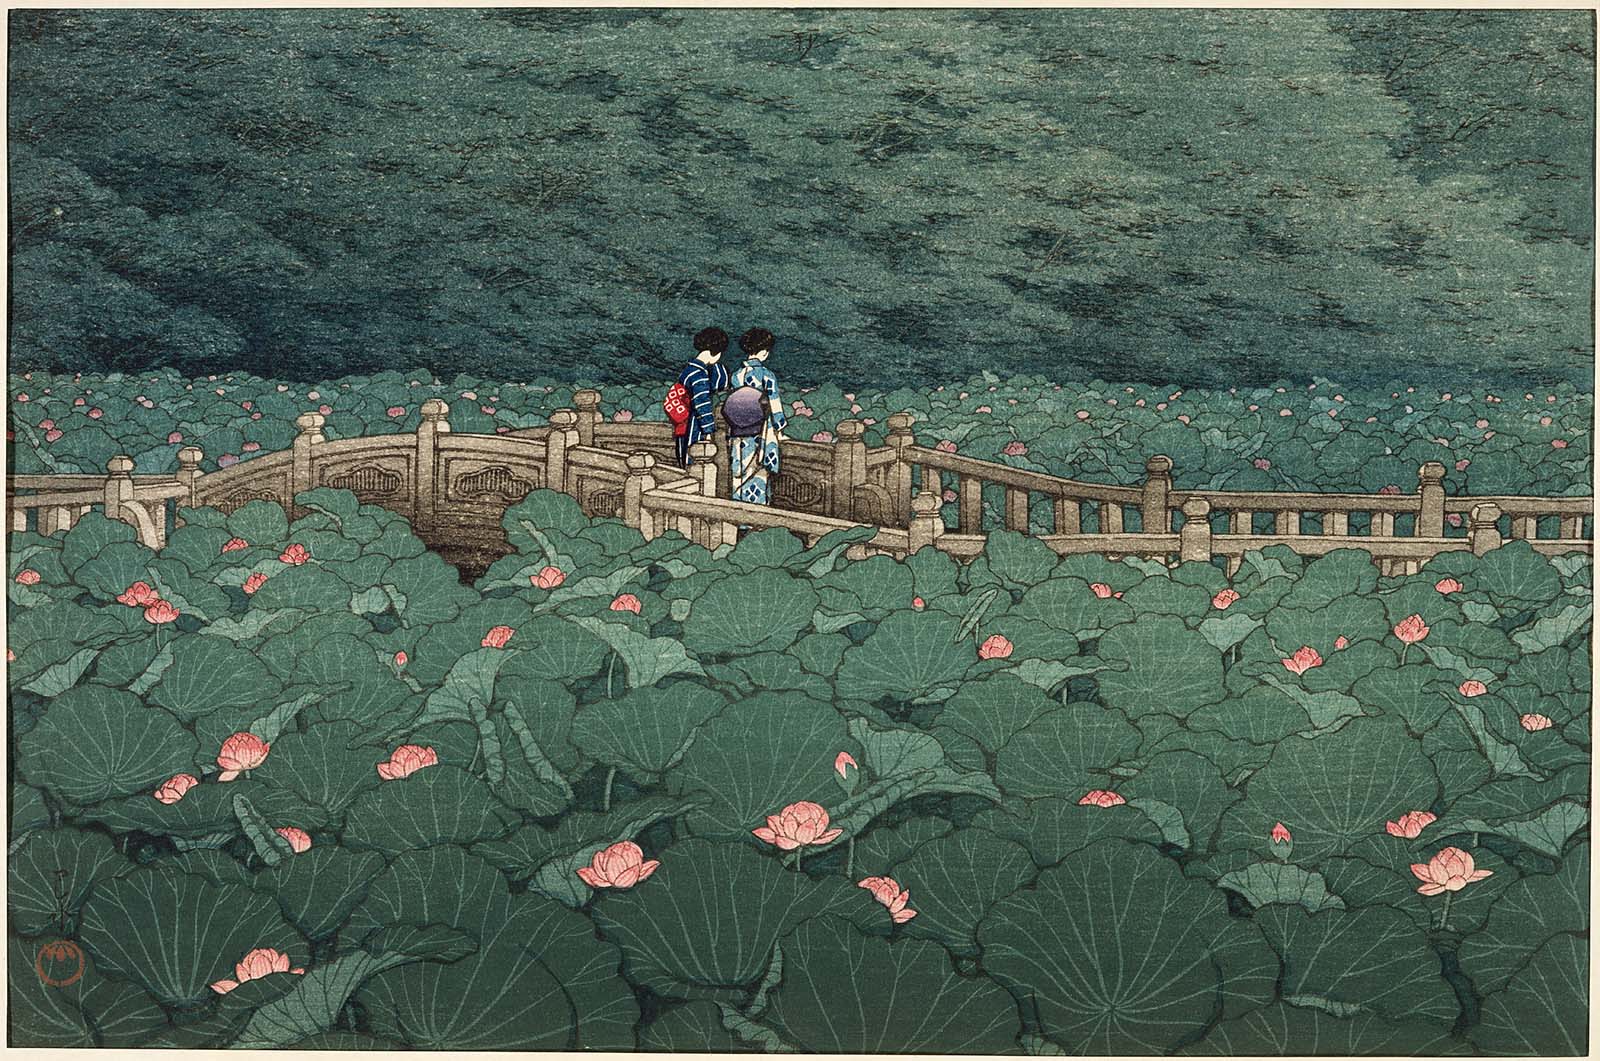 시바 벤텐 신사의 연못(The Pond at Benten Shrine in Shiba) by Hasui Kawase - 1929 - 27.3 x 39.8 cm 